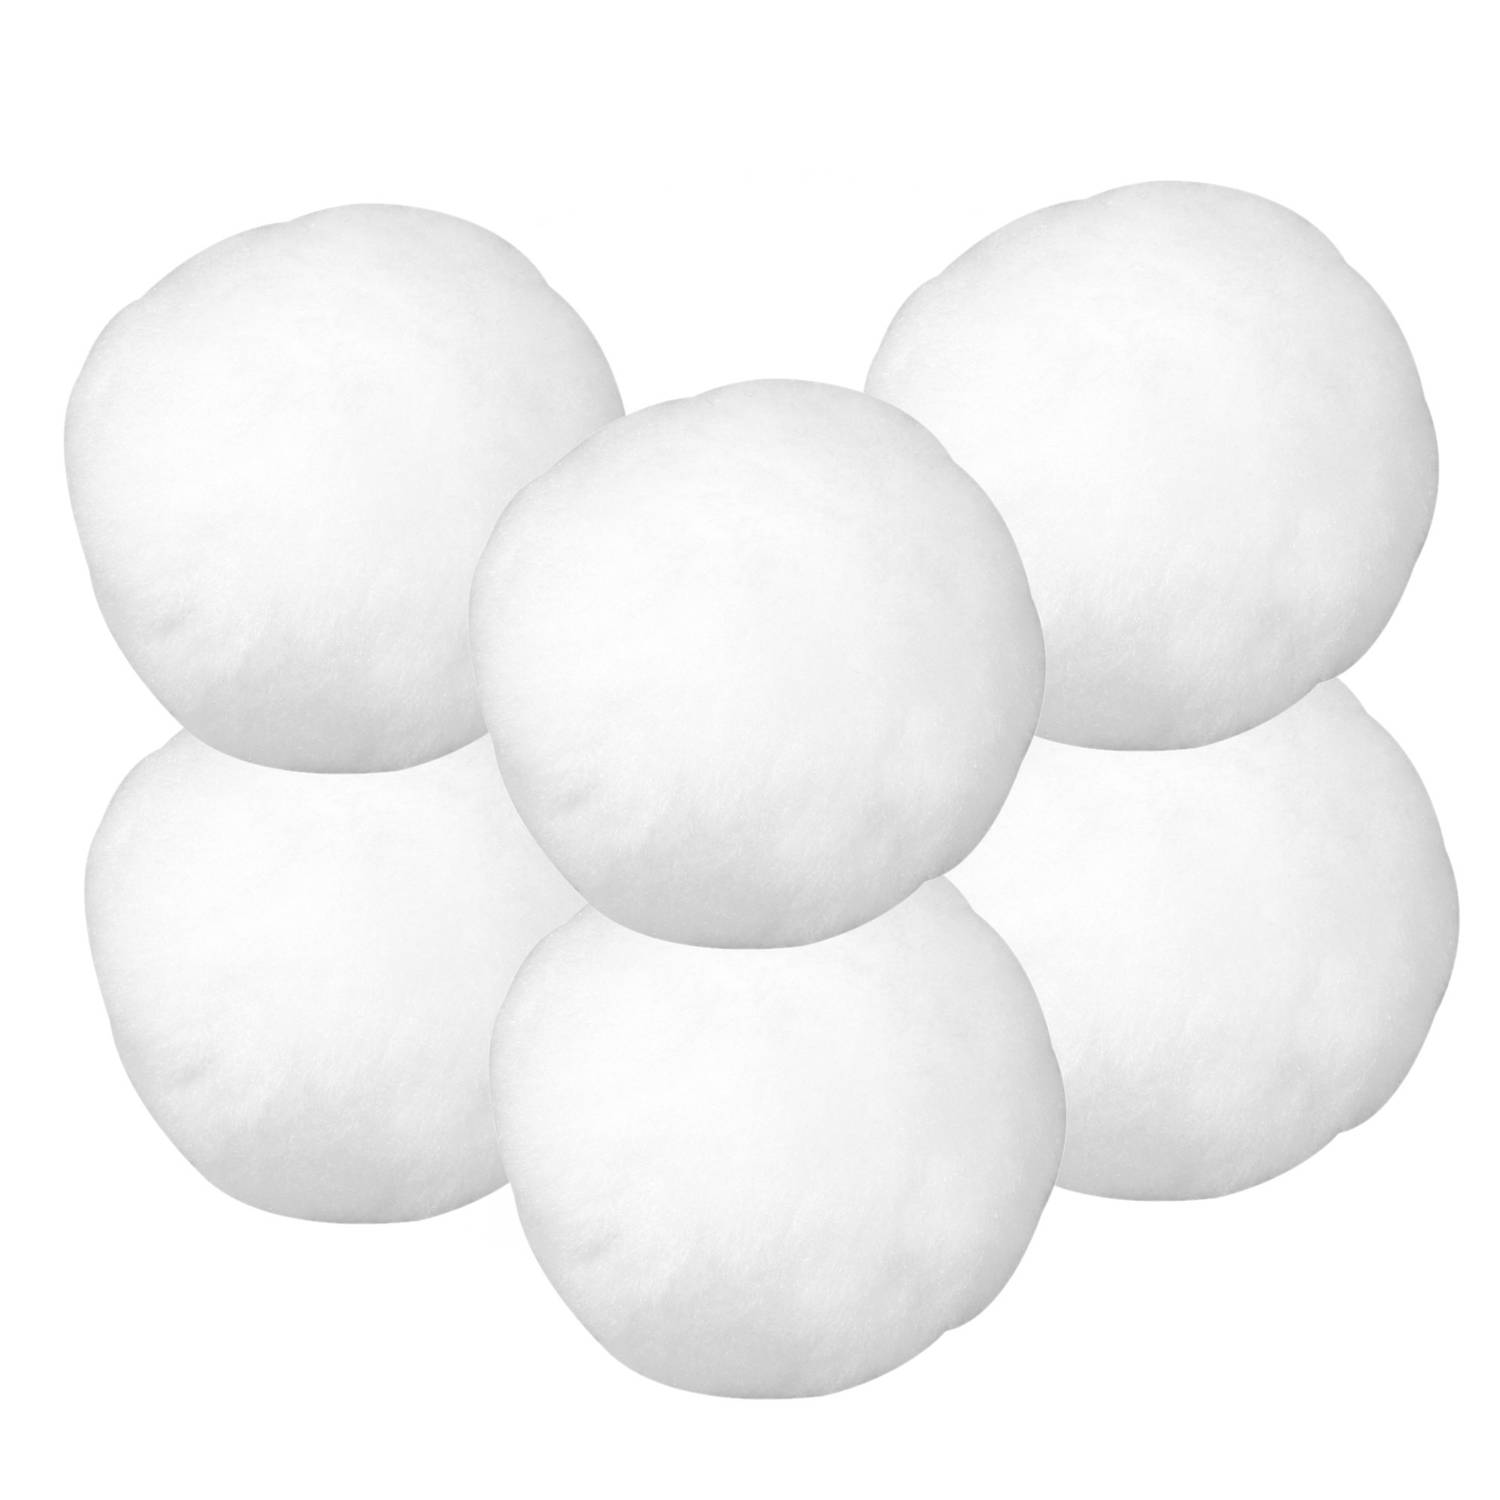 6x Kunst sneeuwballen/sneeuwbollen van acryl 7,5 cm - Decoratiesneeuw